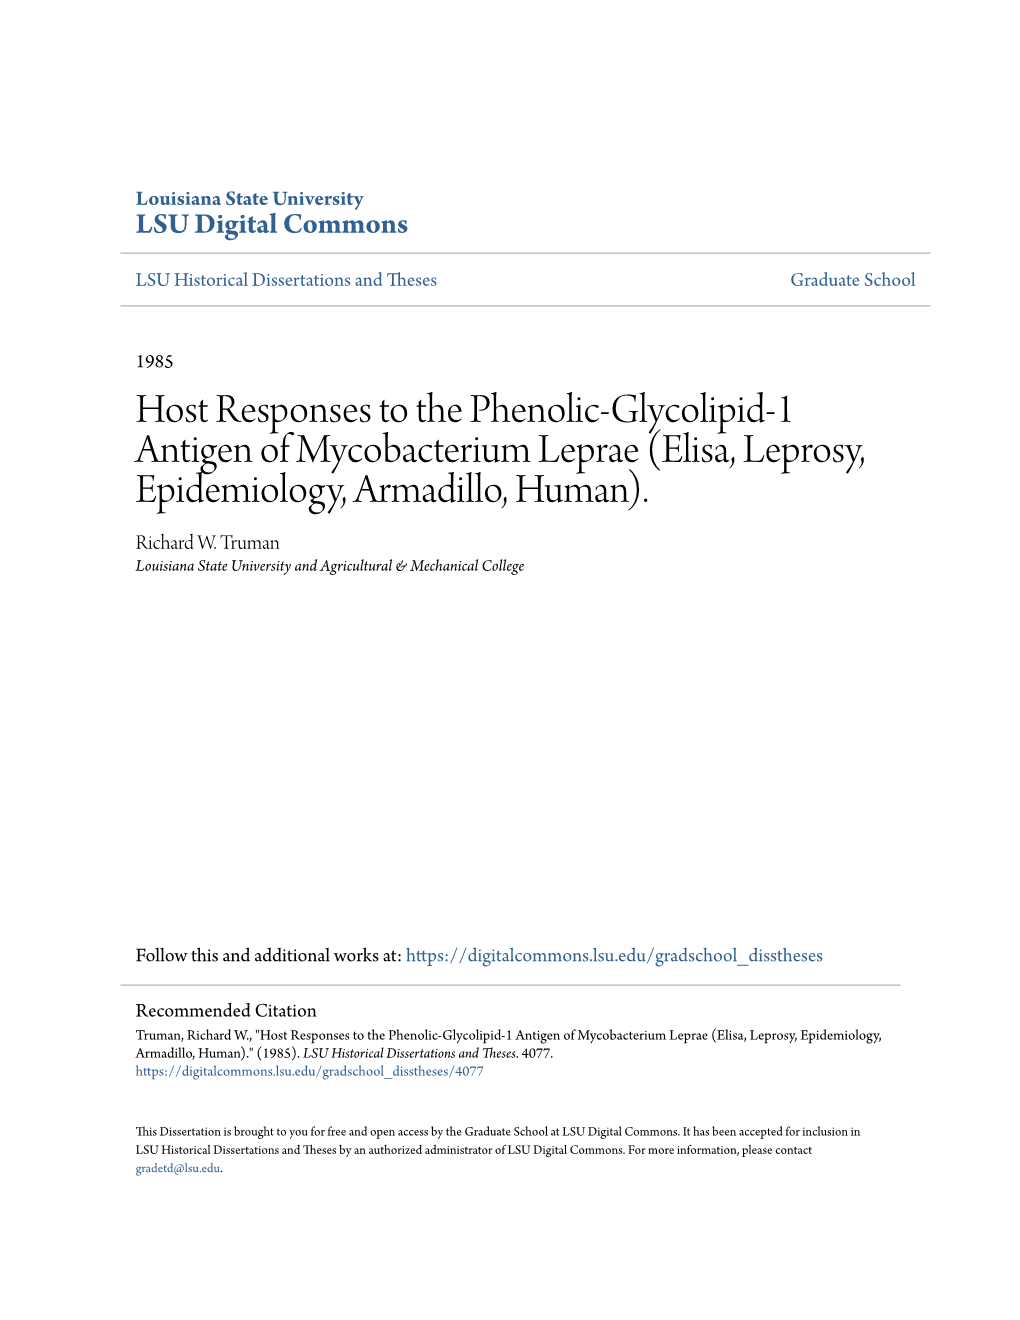 Host Responses to the Phenolic-Glycolipid-1 Antigen of Mycobacterium Leprae (Elisa, Leprosy, Epidemiology, Armadillo, Human)